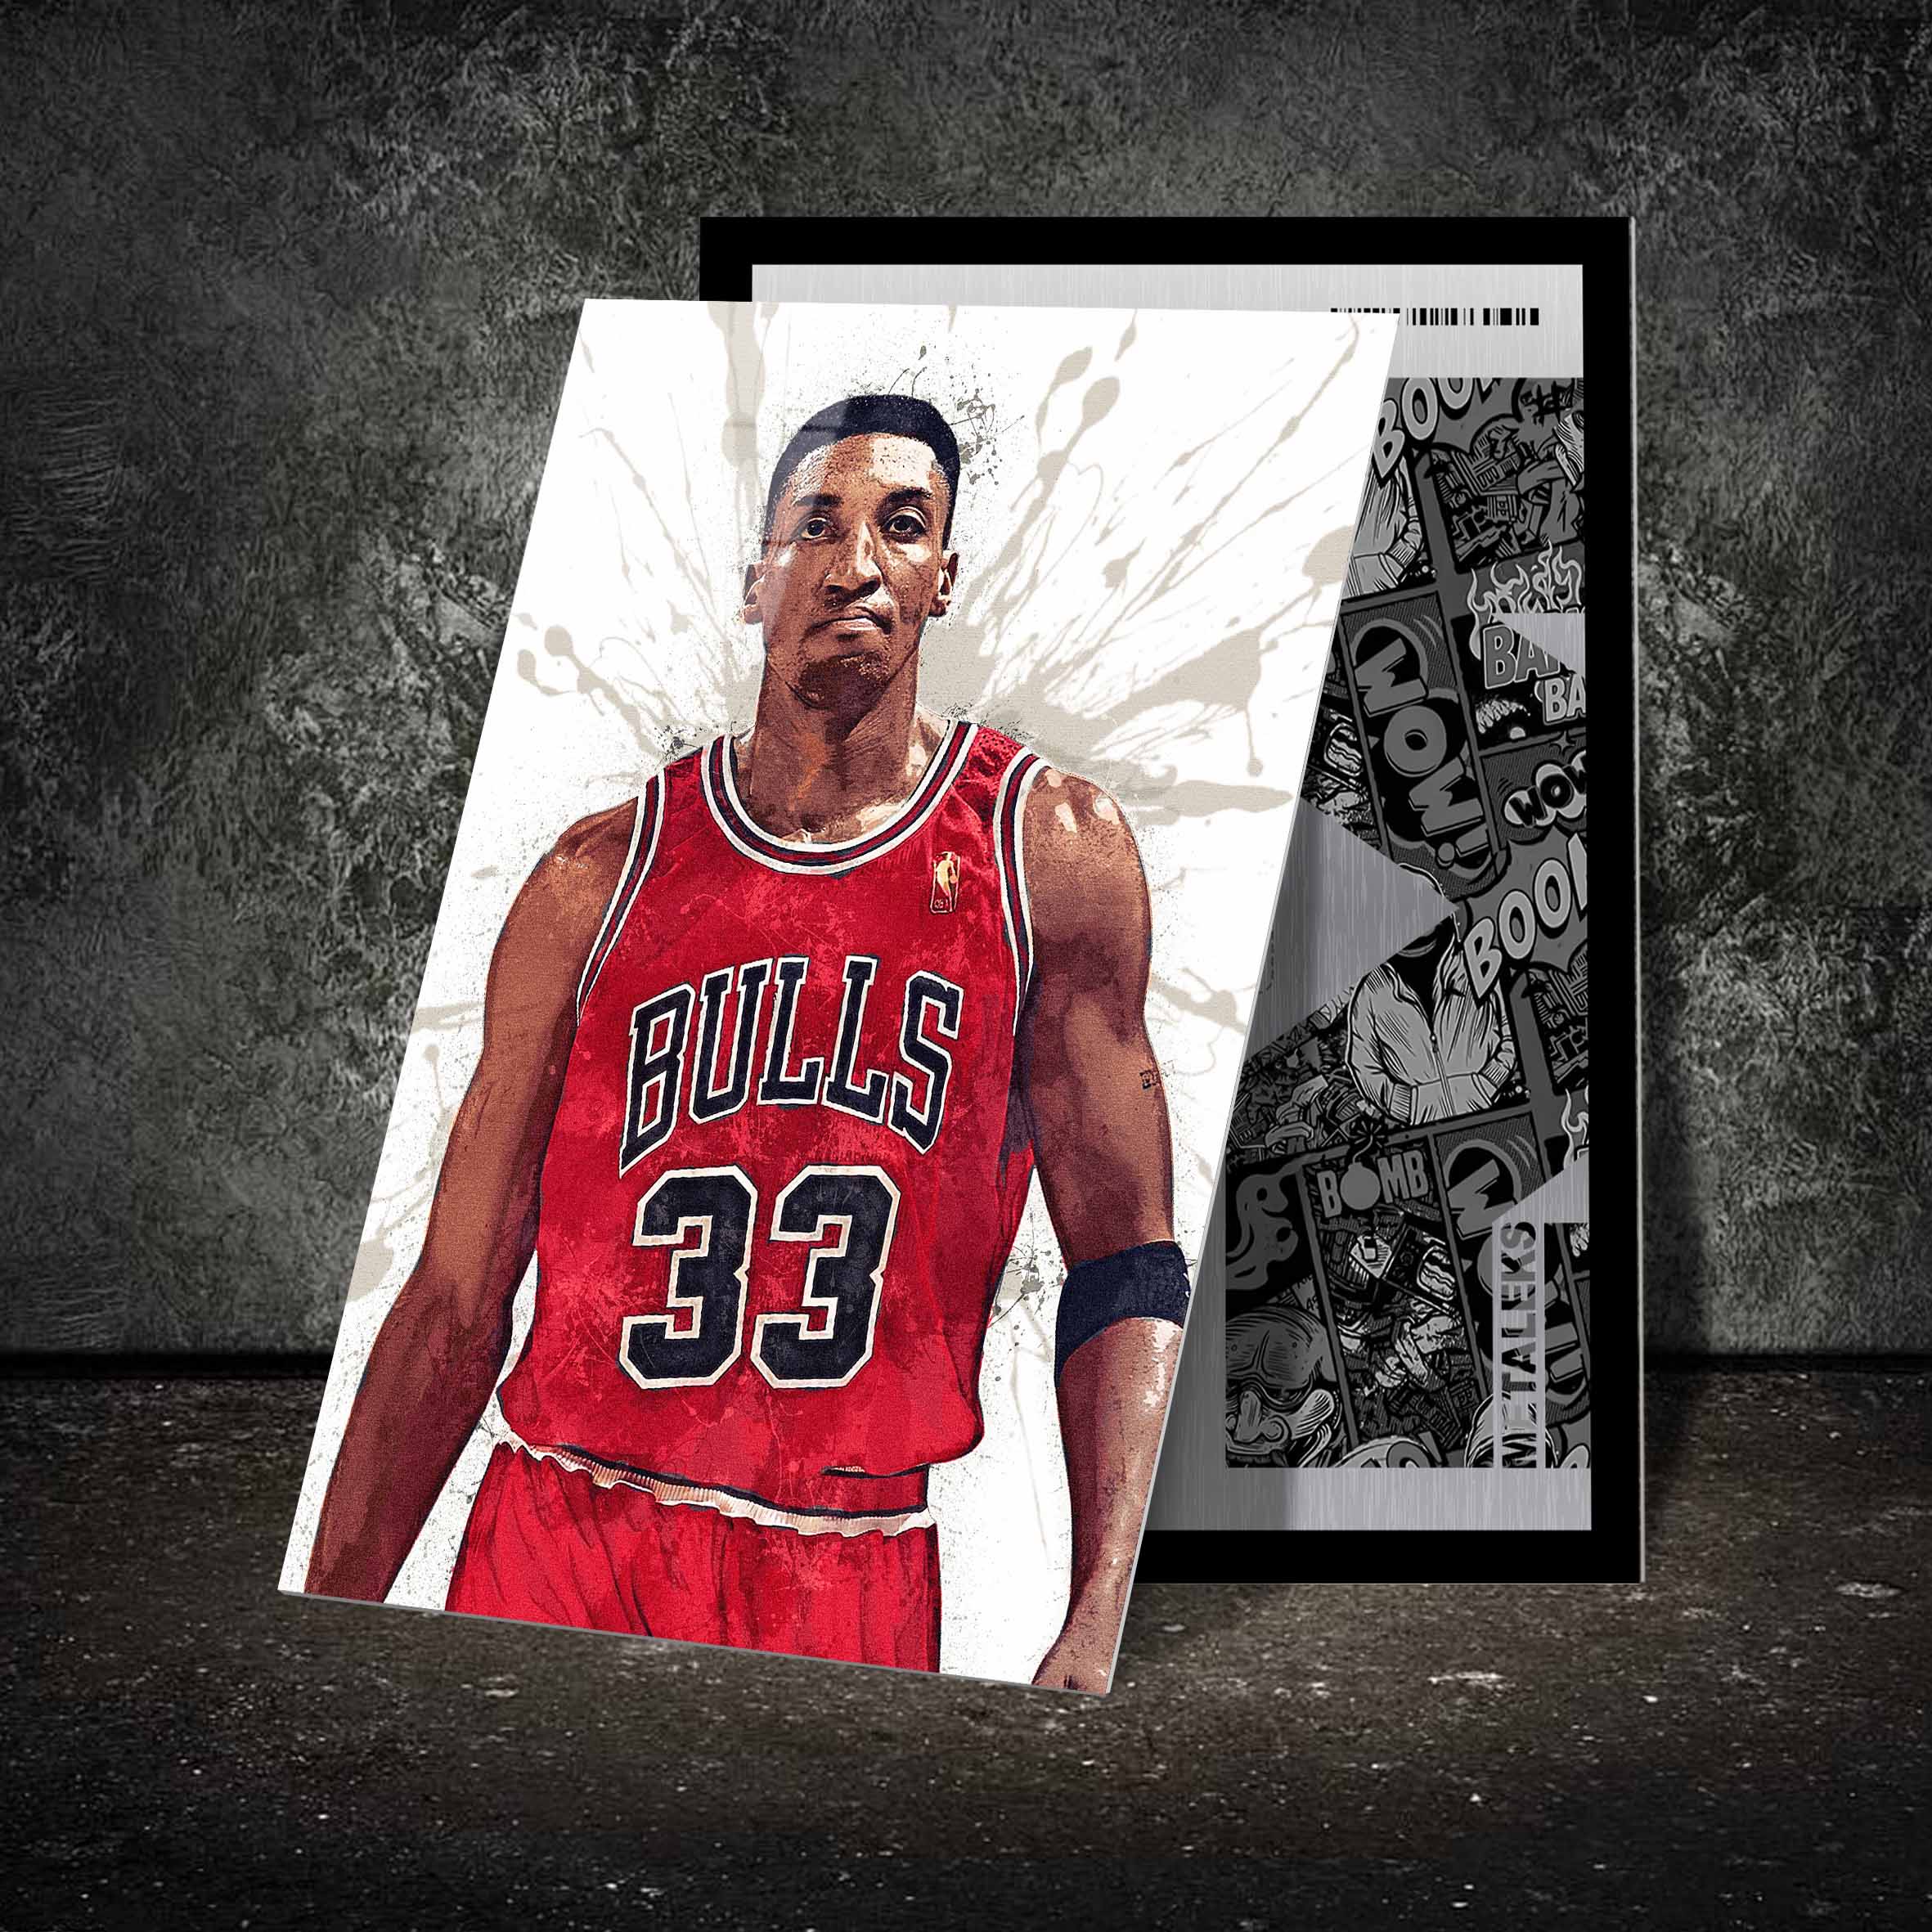 Scottie Pippen Chicago Bulls-designed by @Hoang Van Thuan